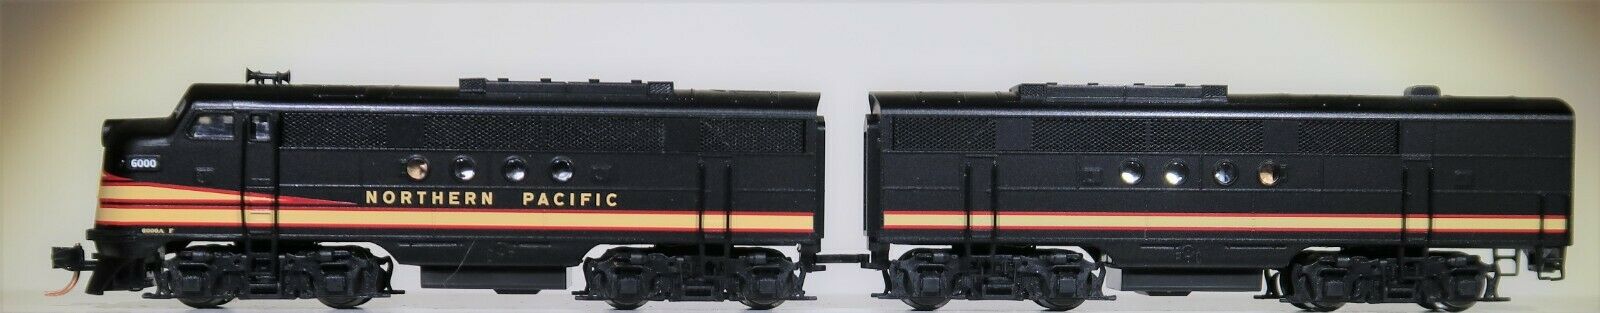 N Scale - Micro-Trains - 992 00 131 - Locomotive, Diesel, EMD FT - Northern Pacific - 6000